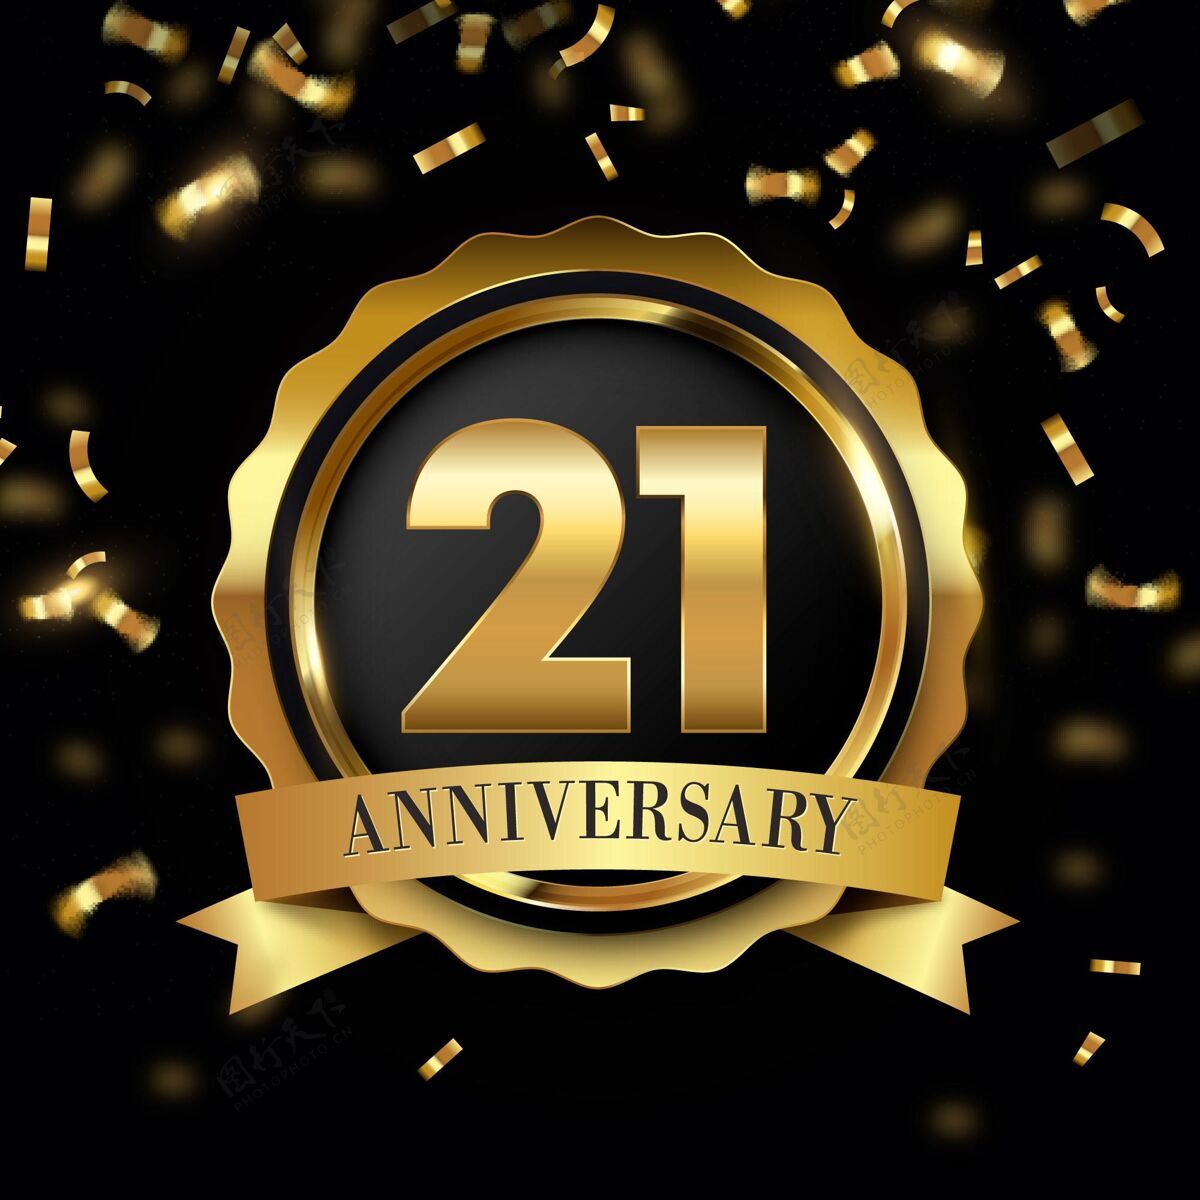 庆祝21周年纪念背景 金色元素生日快乐21周年纪念黄金